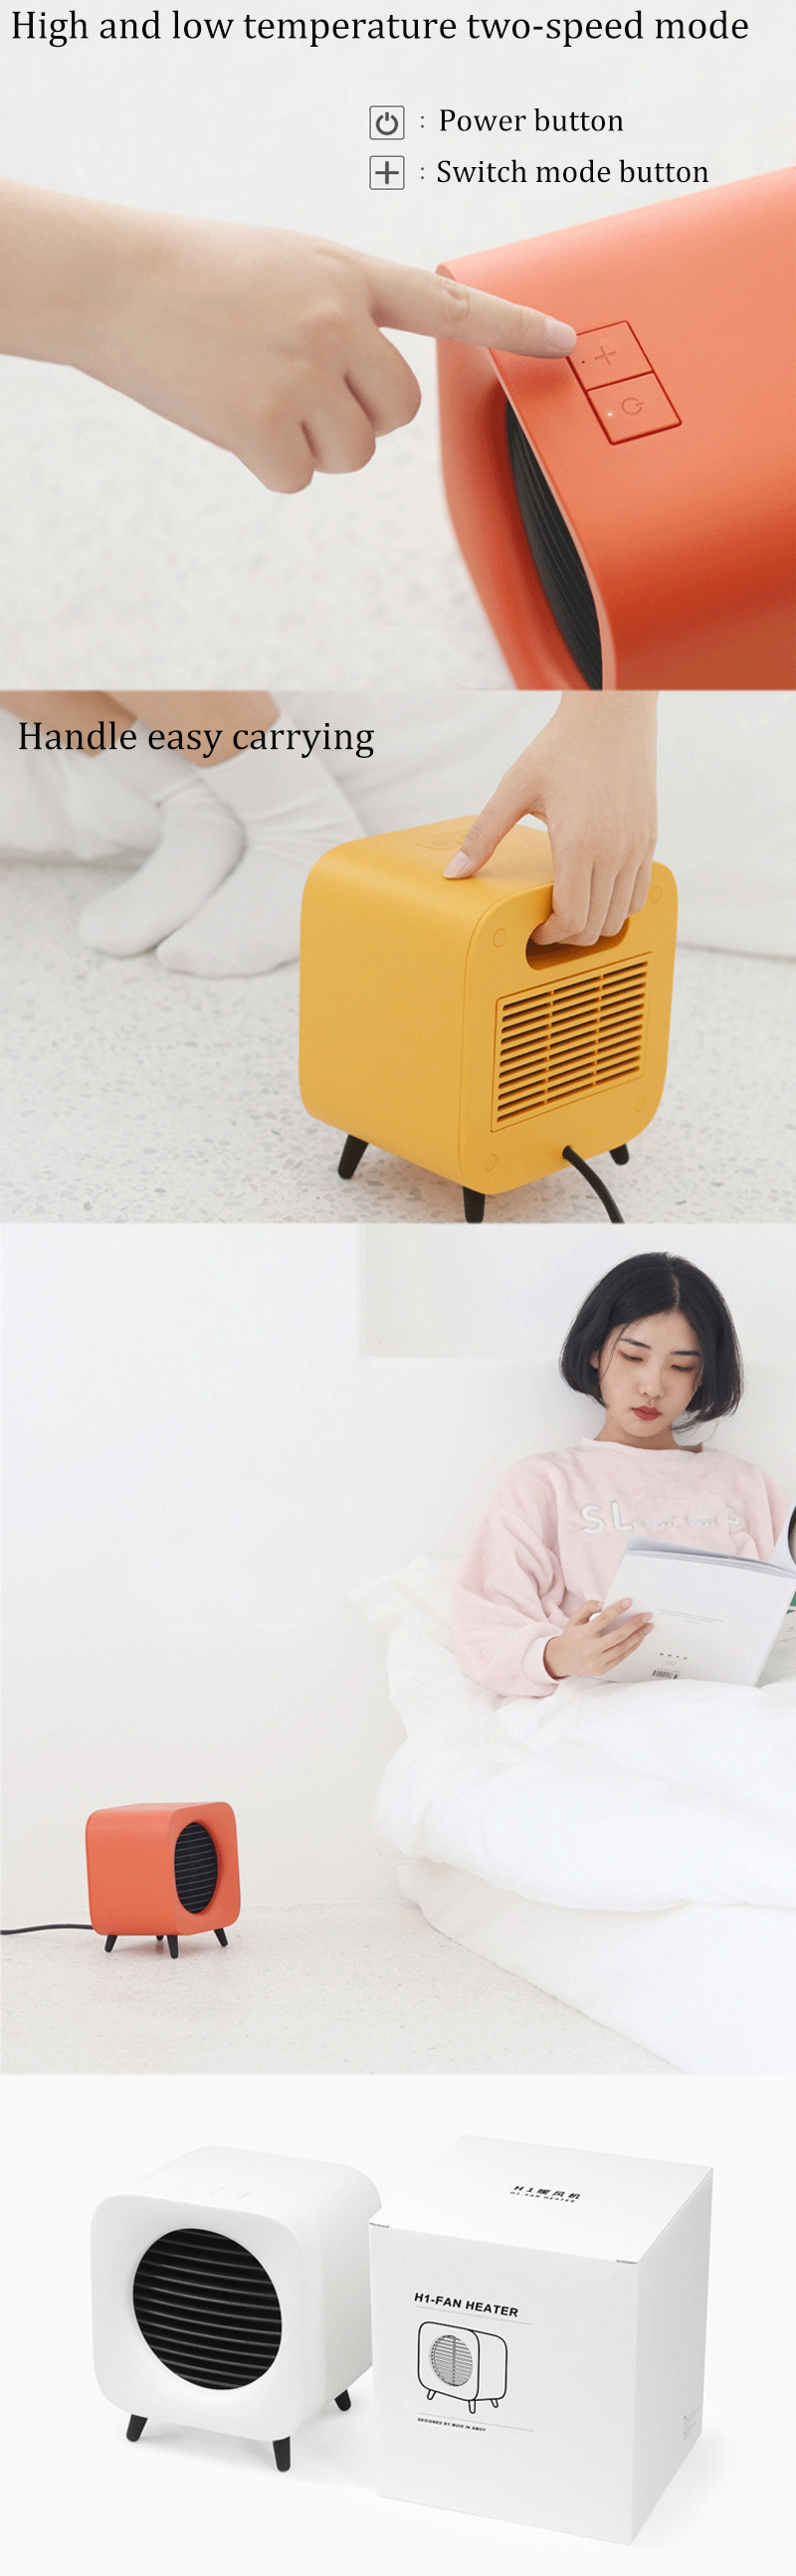 700W-Fan-Heater-Portable-Electric-Winter-Warmer-Fan-Desk-Camping-Home-Two-Mode-Heating-Device-1353289-4